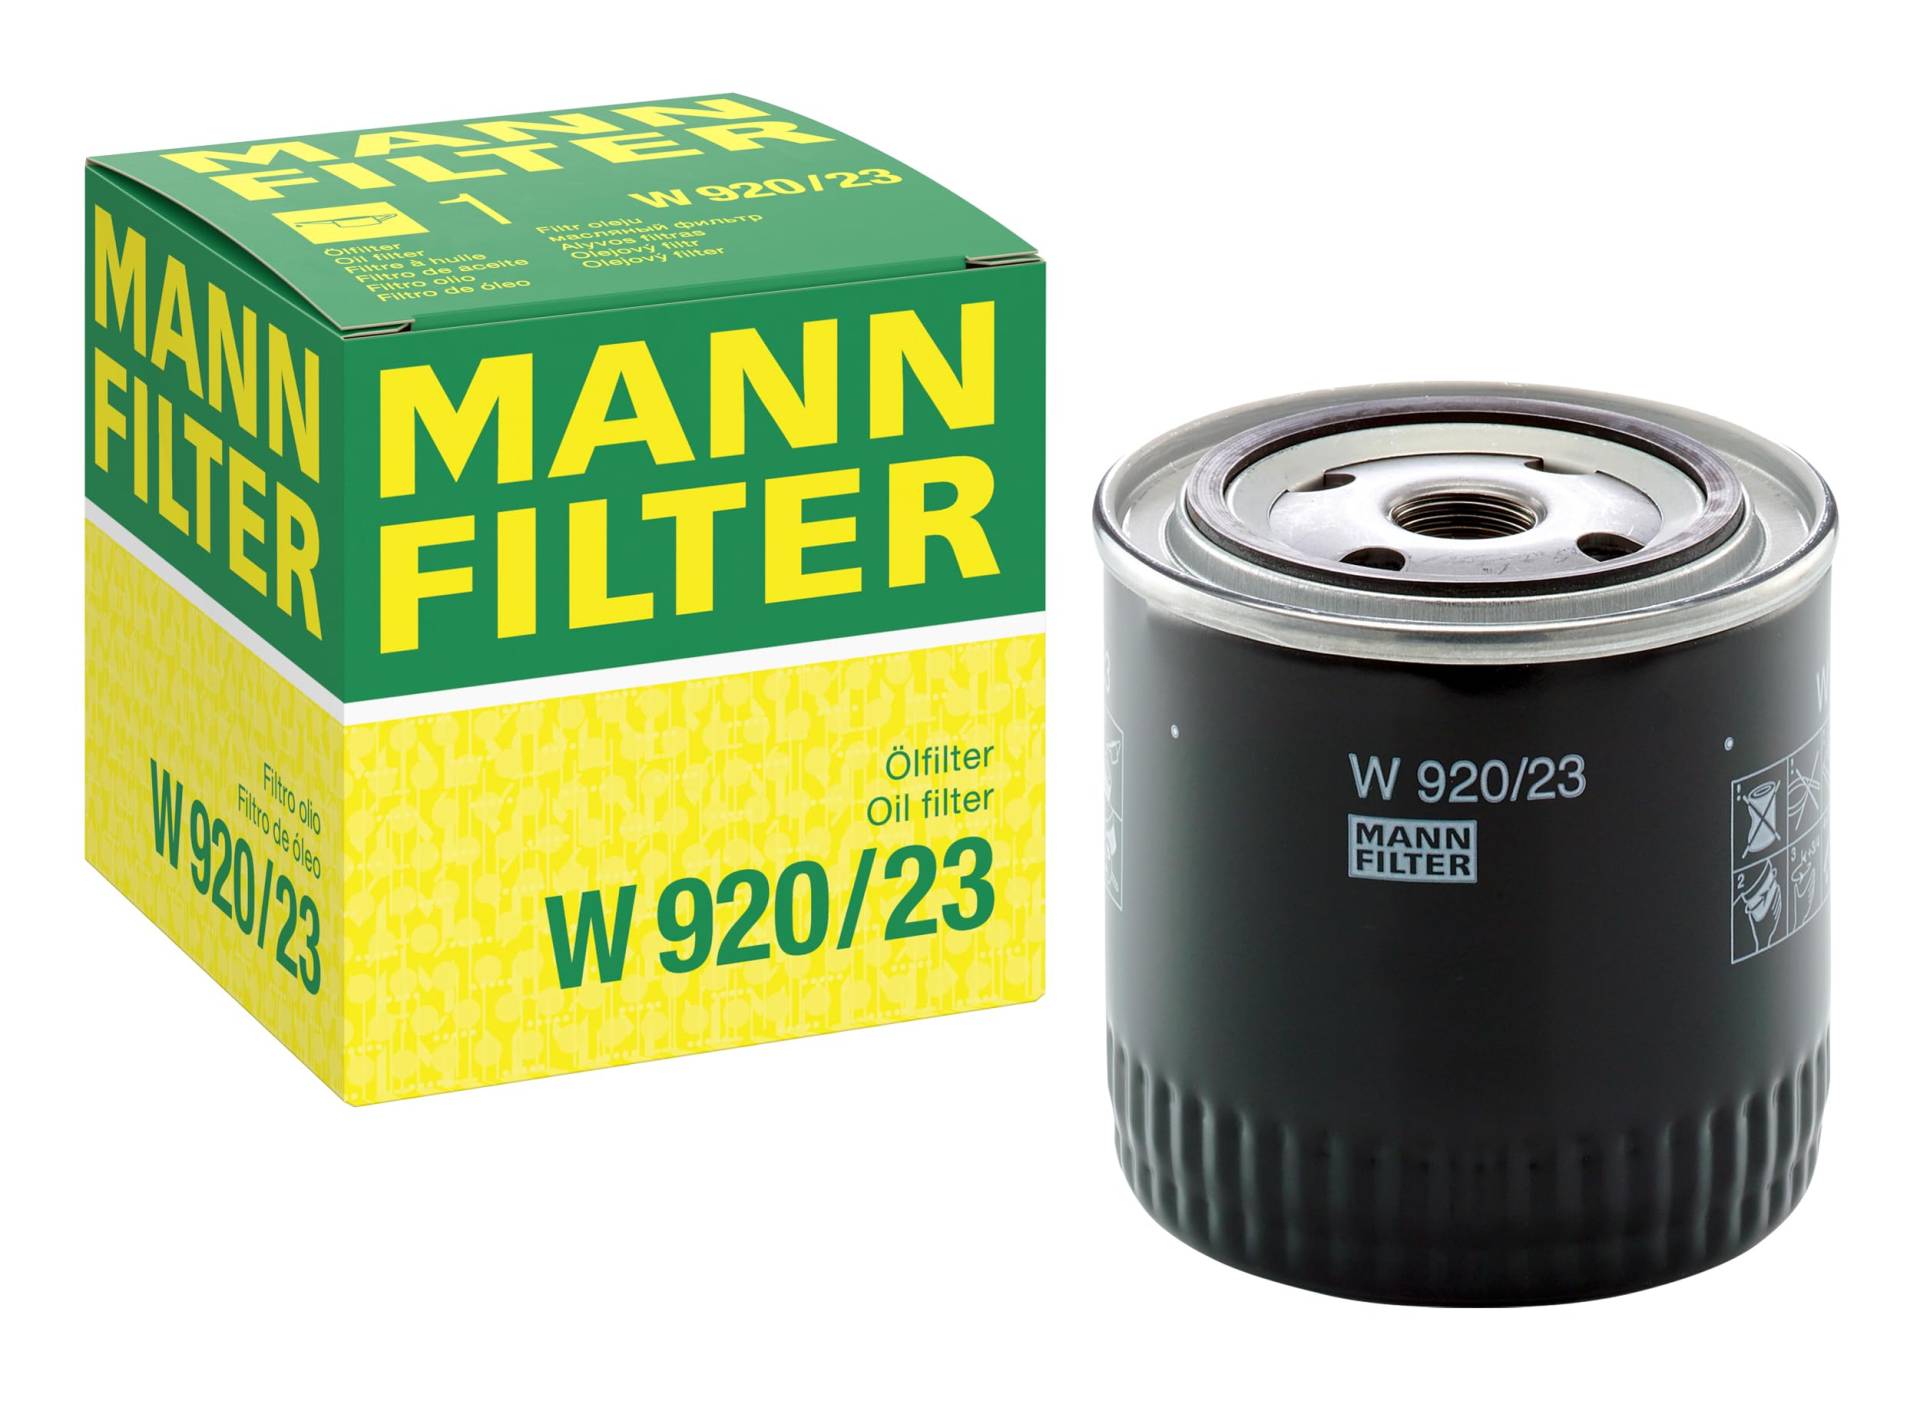 MANN-FILTER W 920/23 Ölfilter – Für Nutzfahrzeuge von MANN-FILTER